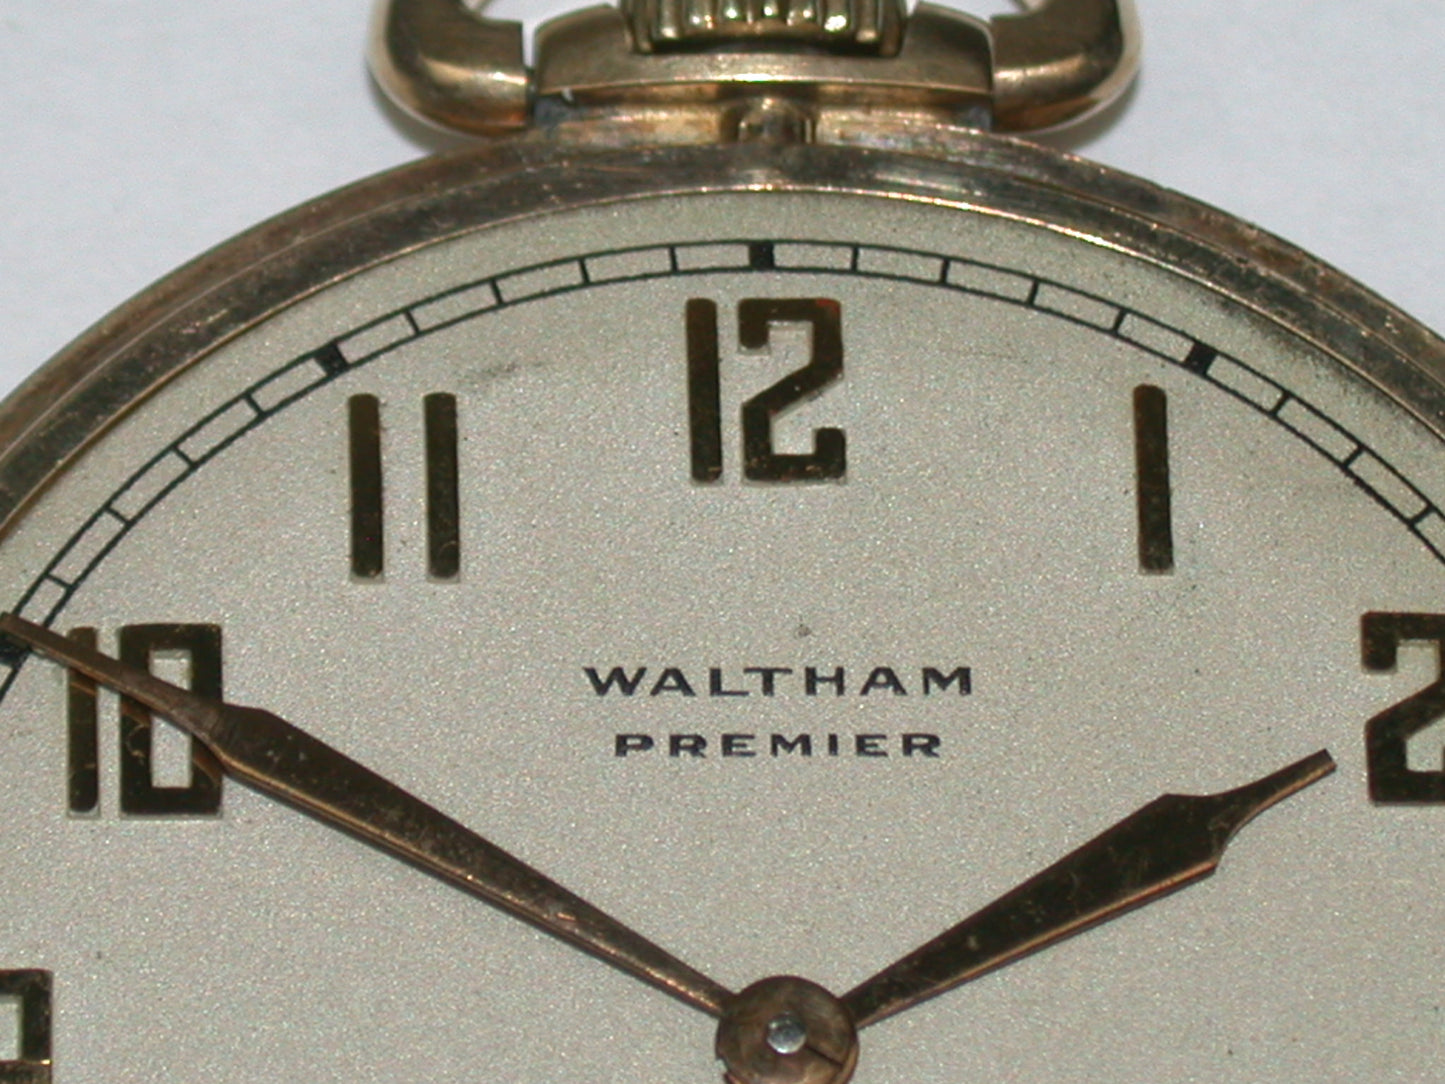 Lot 12- Waltham 10 Size “WALTHAM PREMIER” Open Face Pocket Watch